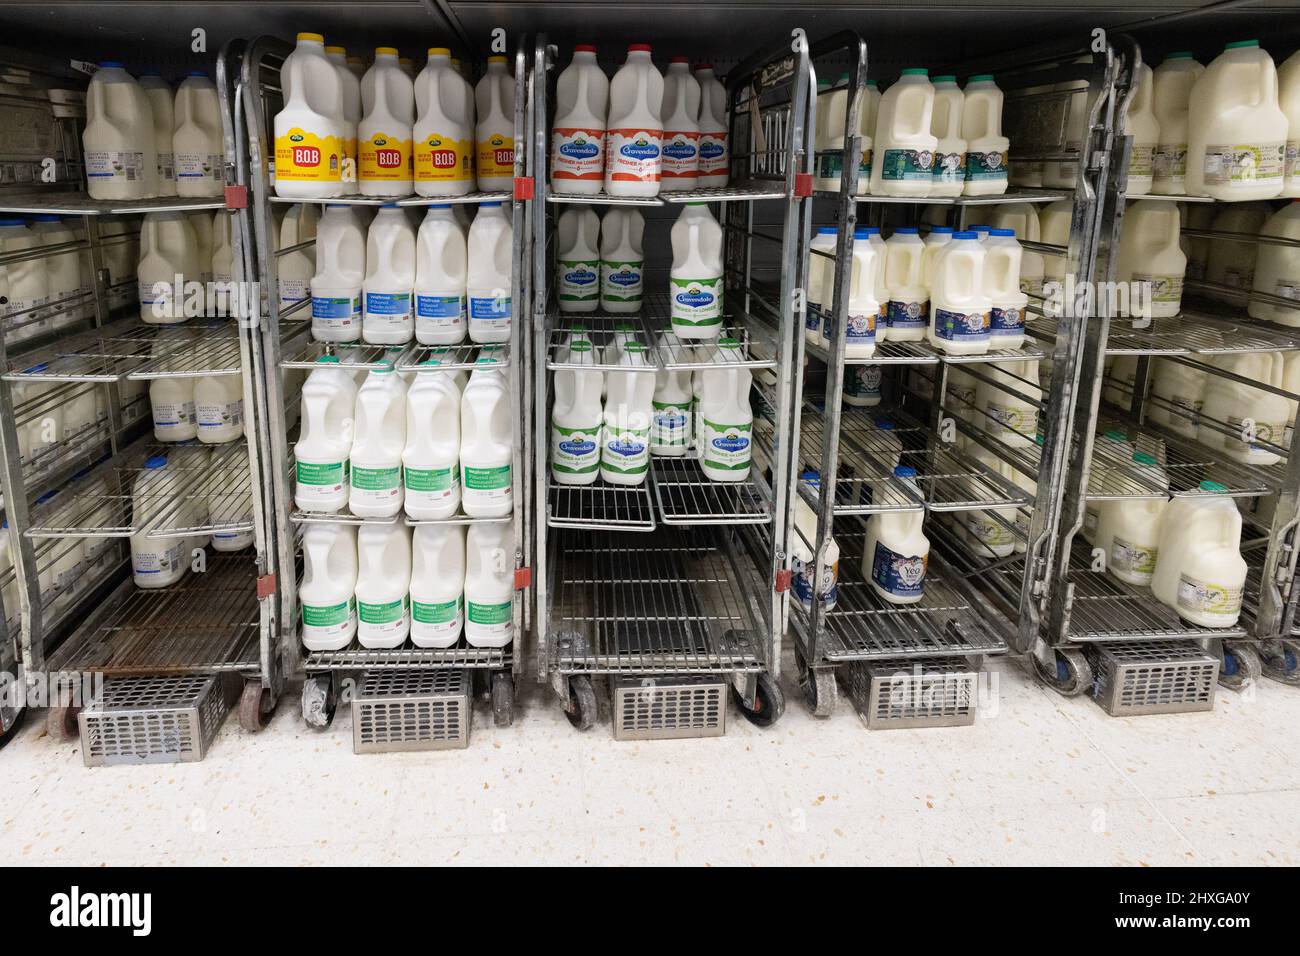 Lait de supermarché à vendre - lait à vendre dans l'allée des produits laitiers et du lait, supermarché Waitrose Royaume-Uni Banque D'Images